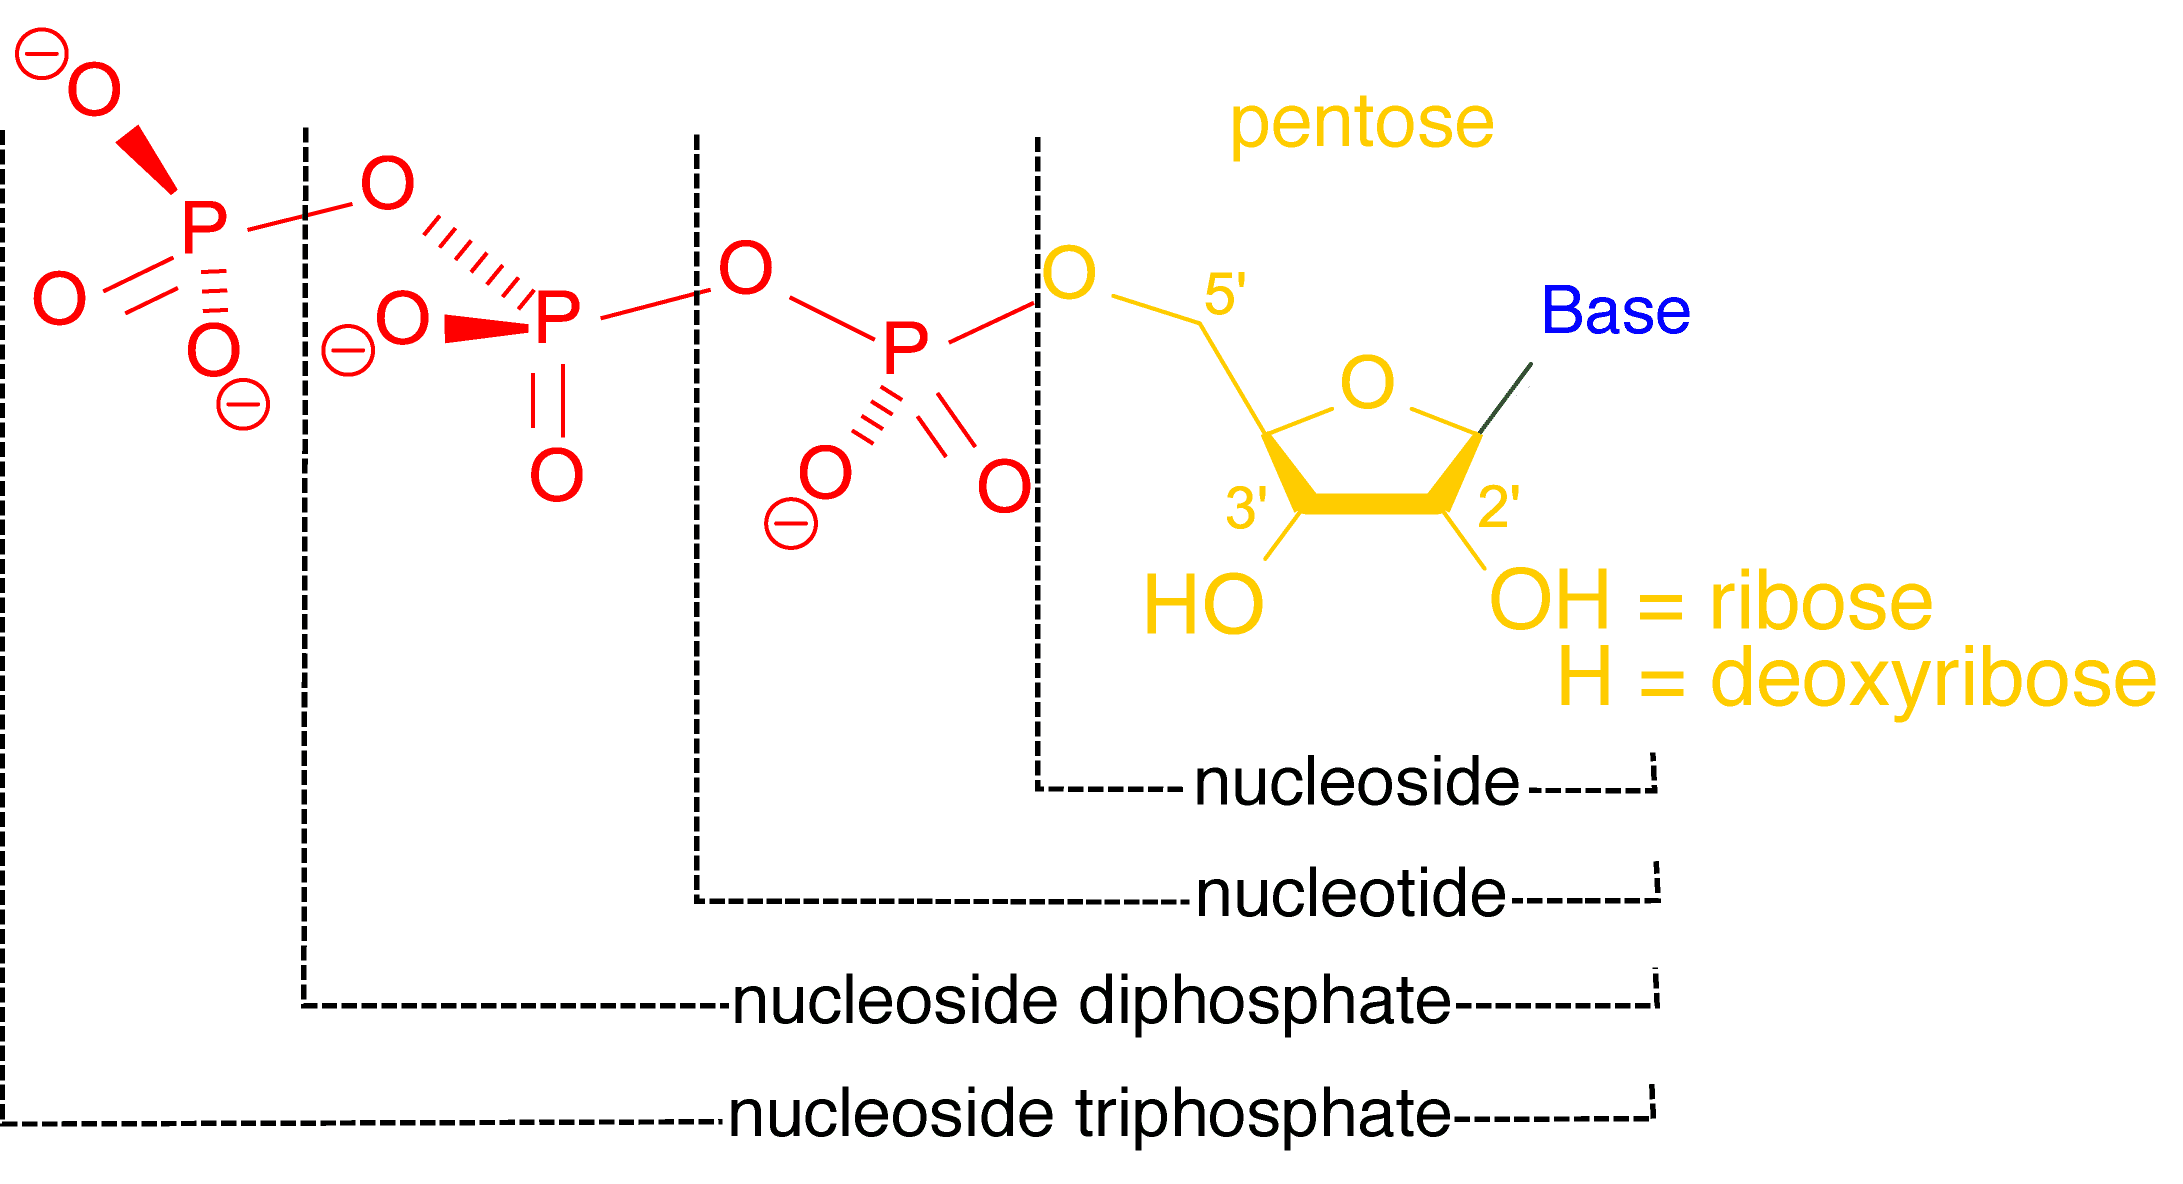 nucleótido